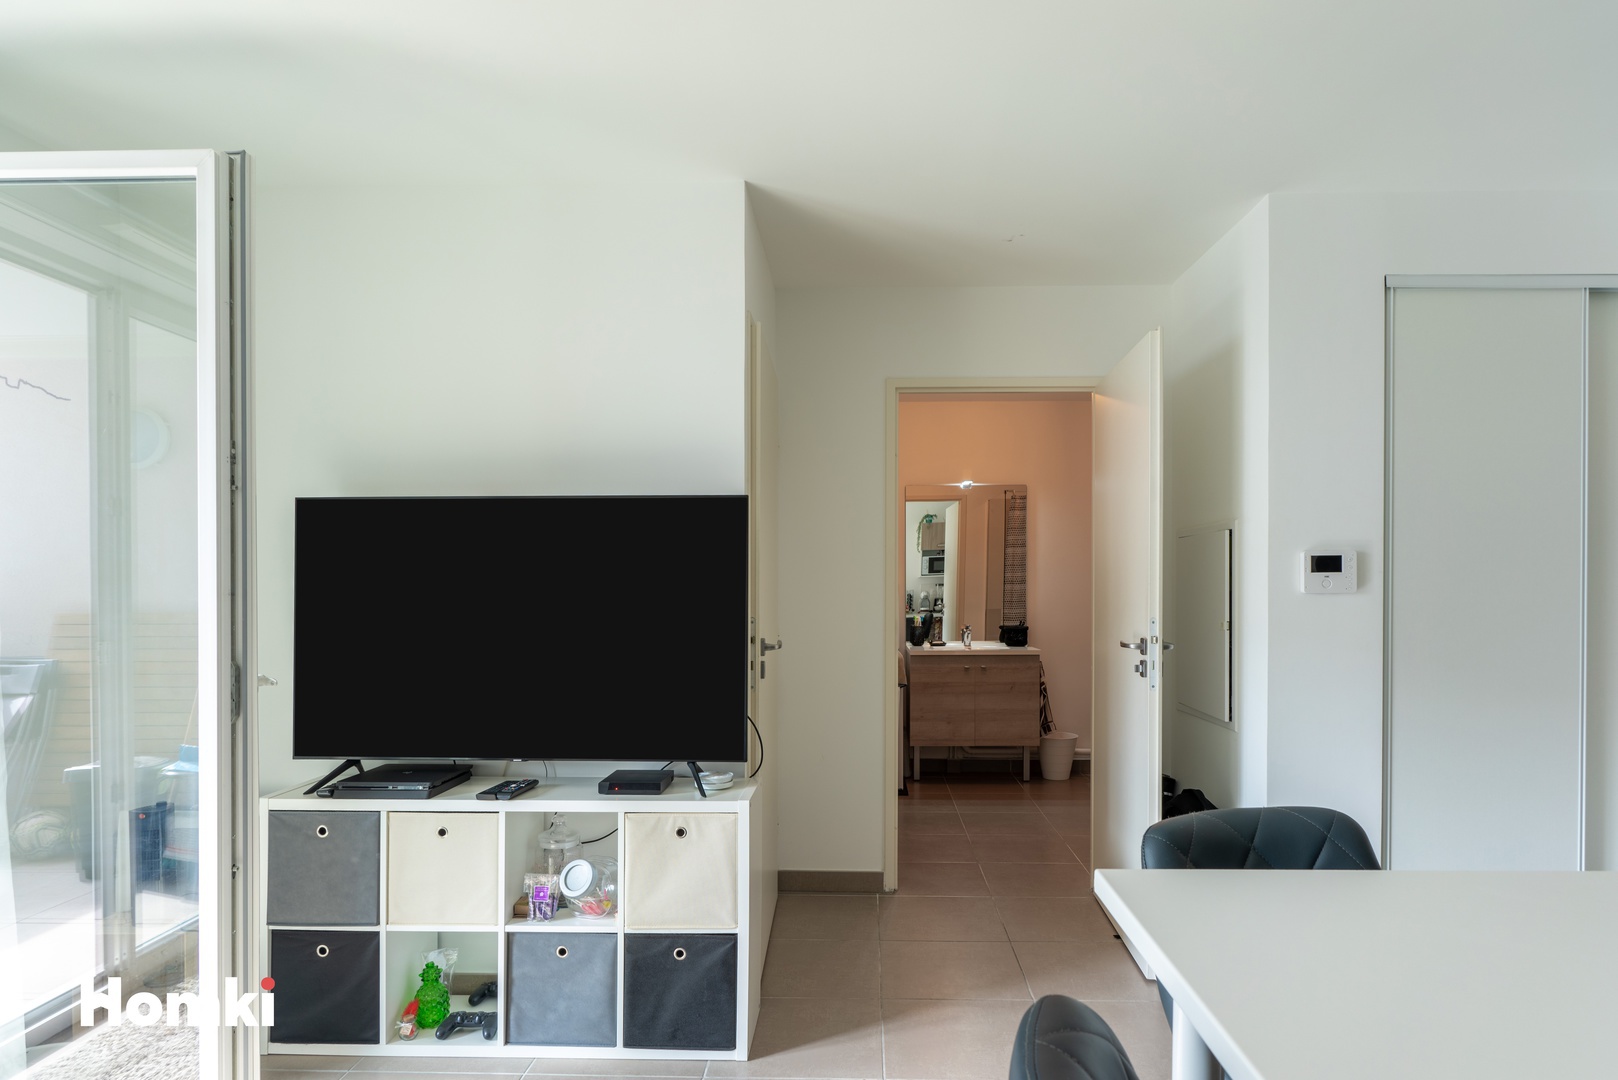 Homki - Vente Appartement  de 35.0 m² à Marseille 13010